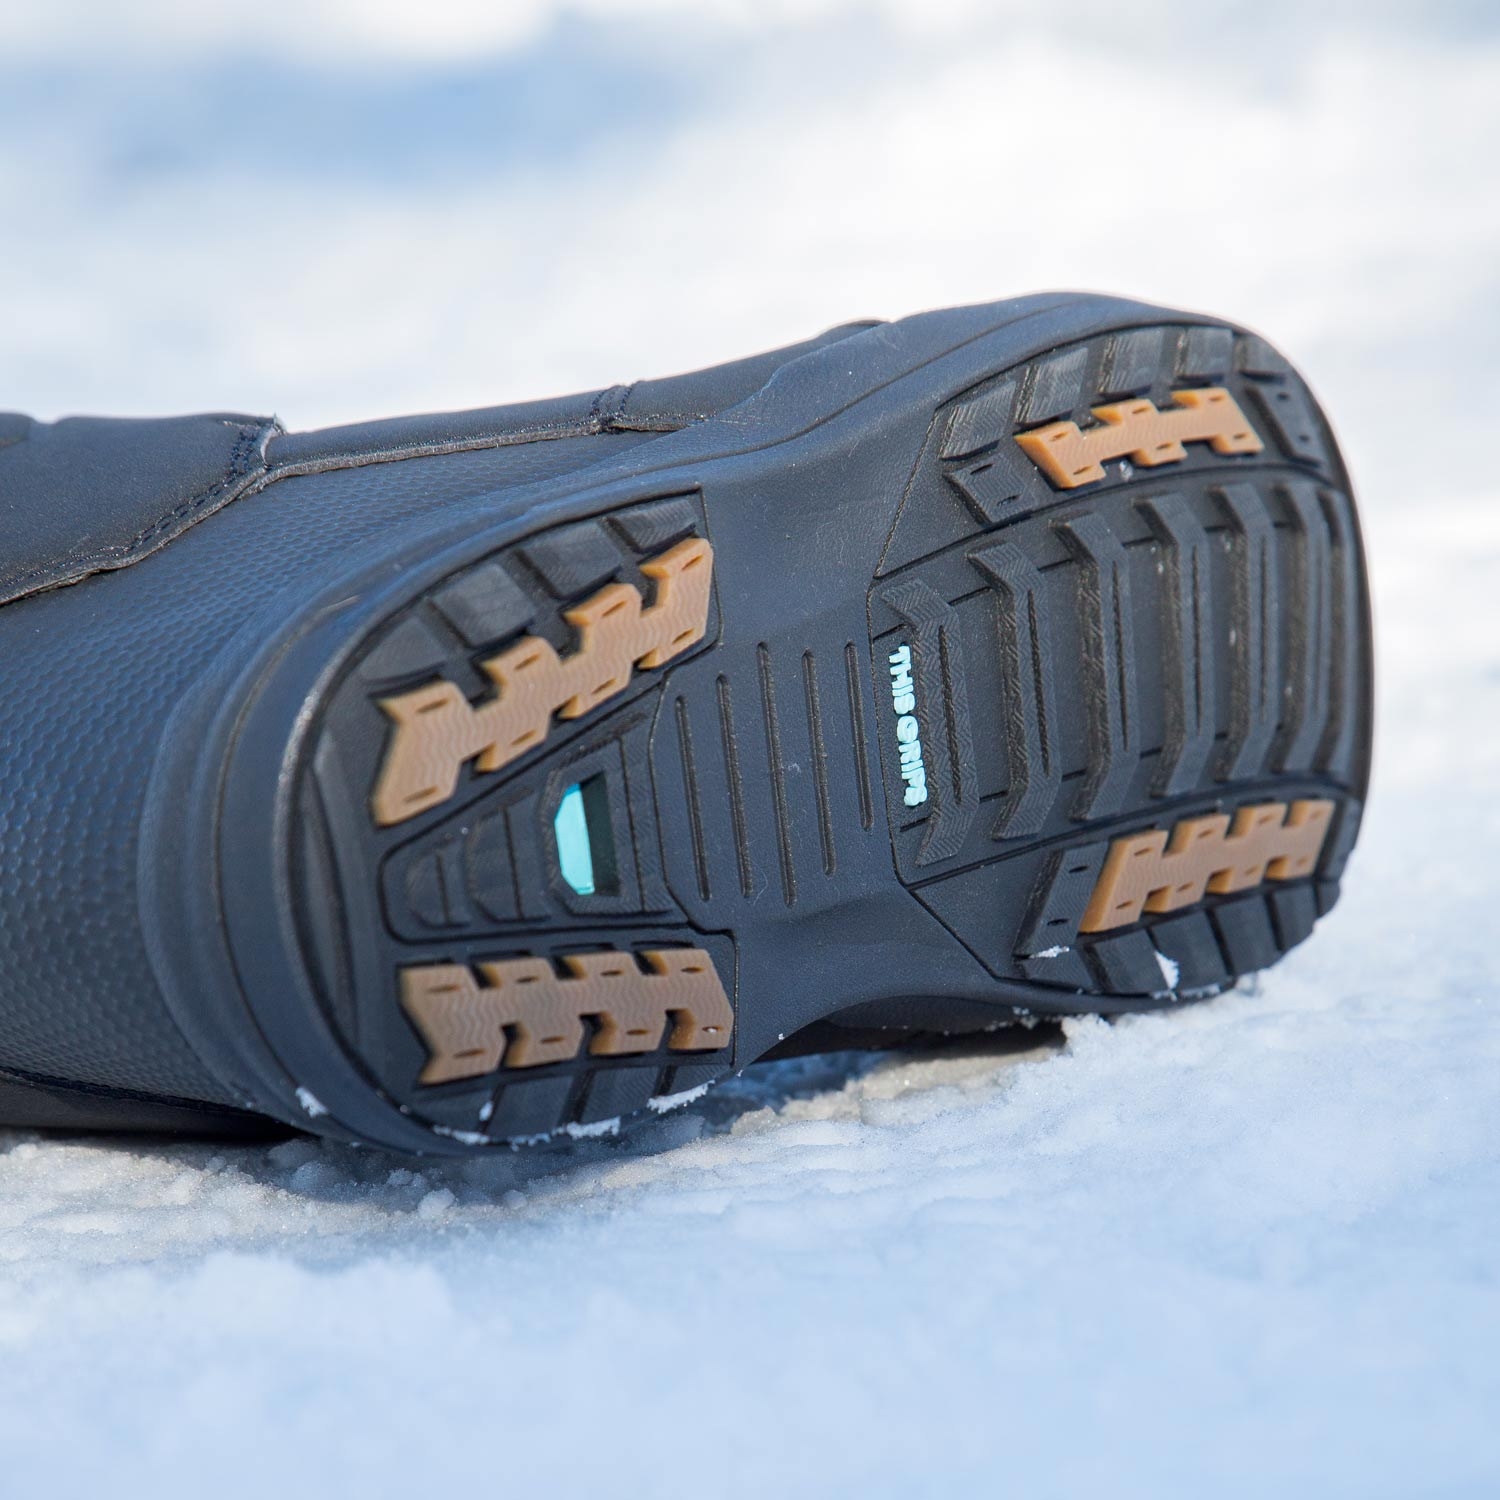 K2 Maysis Snowboard Boots Black 2021